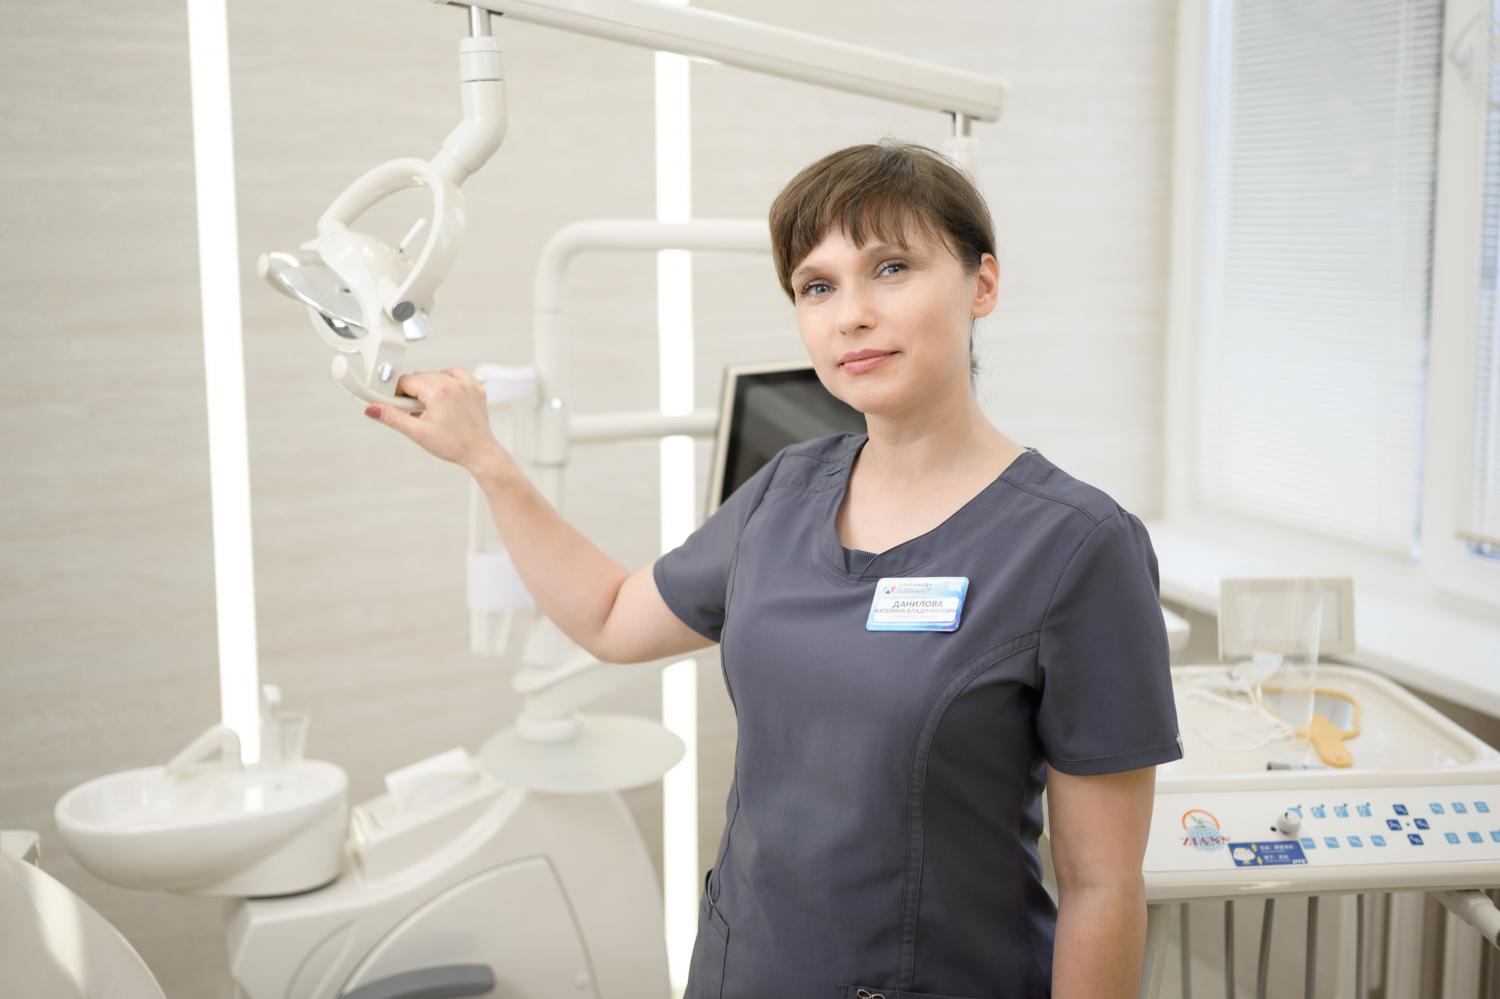 Катерина Данилова  - стоматолог-терапевт экспертного класса теперь в нашей команде!